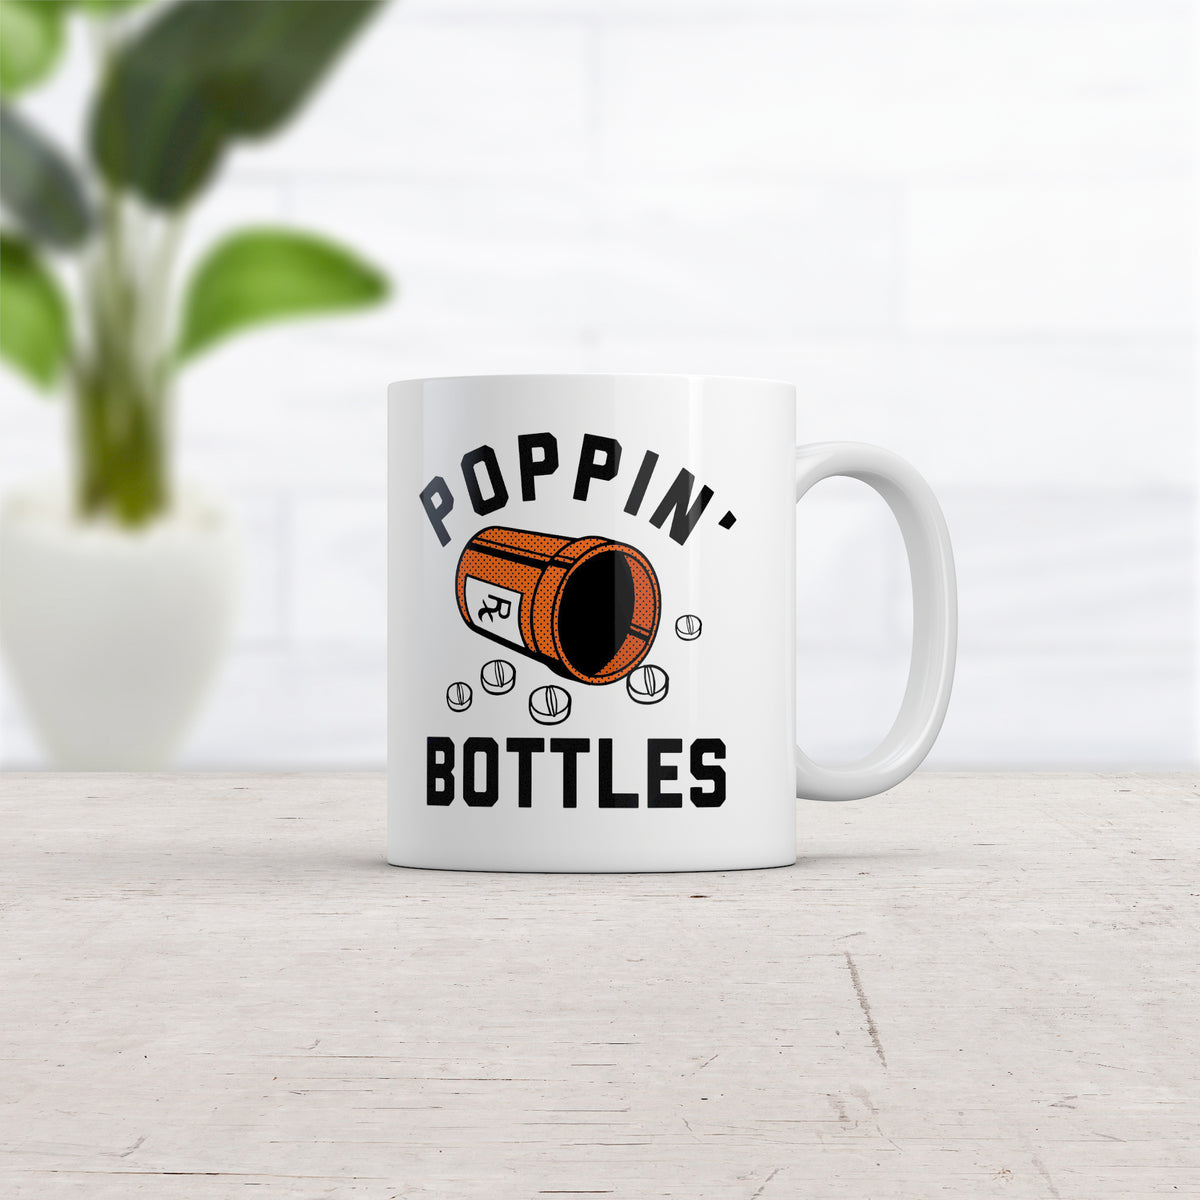 Poppin Bottles Mug